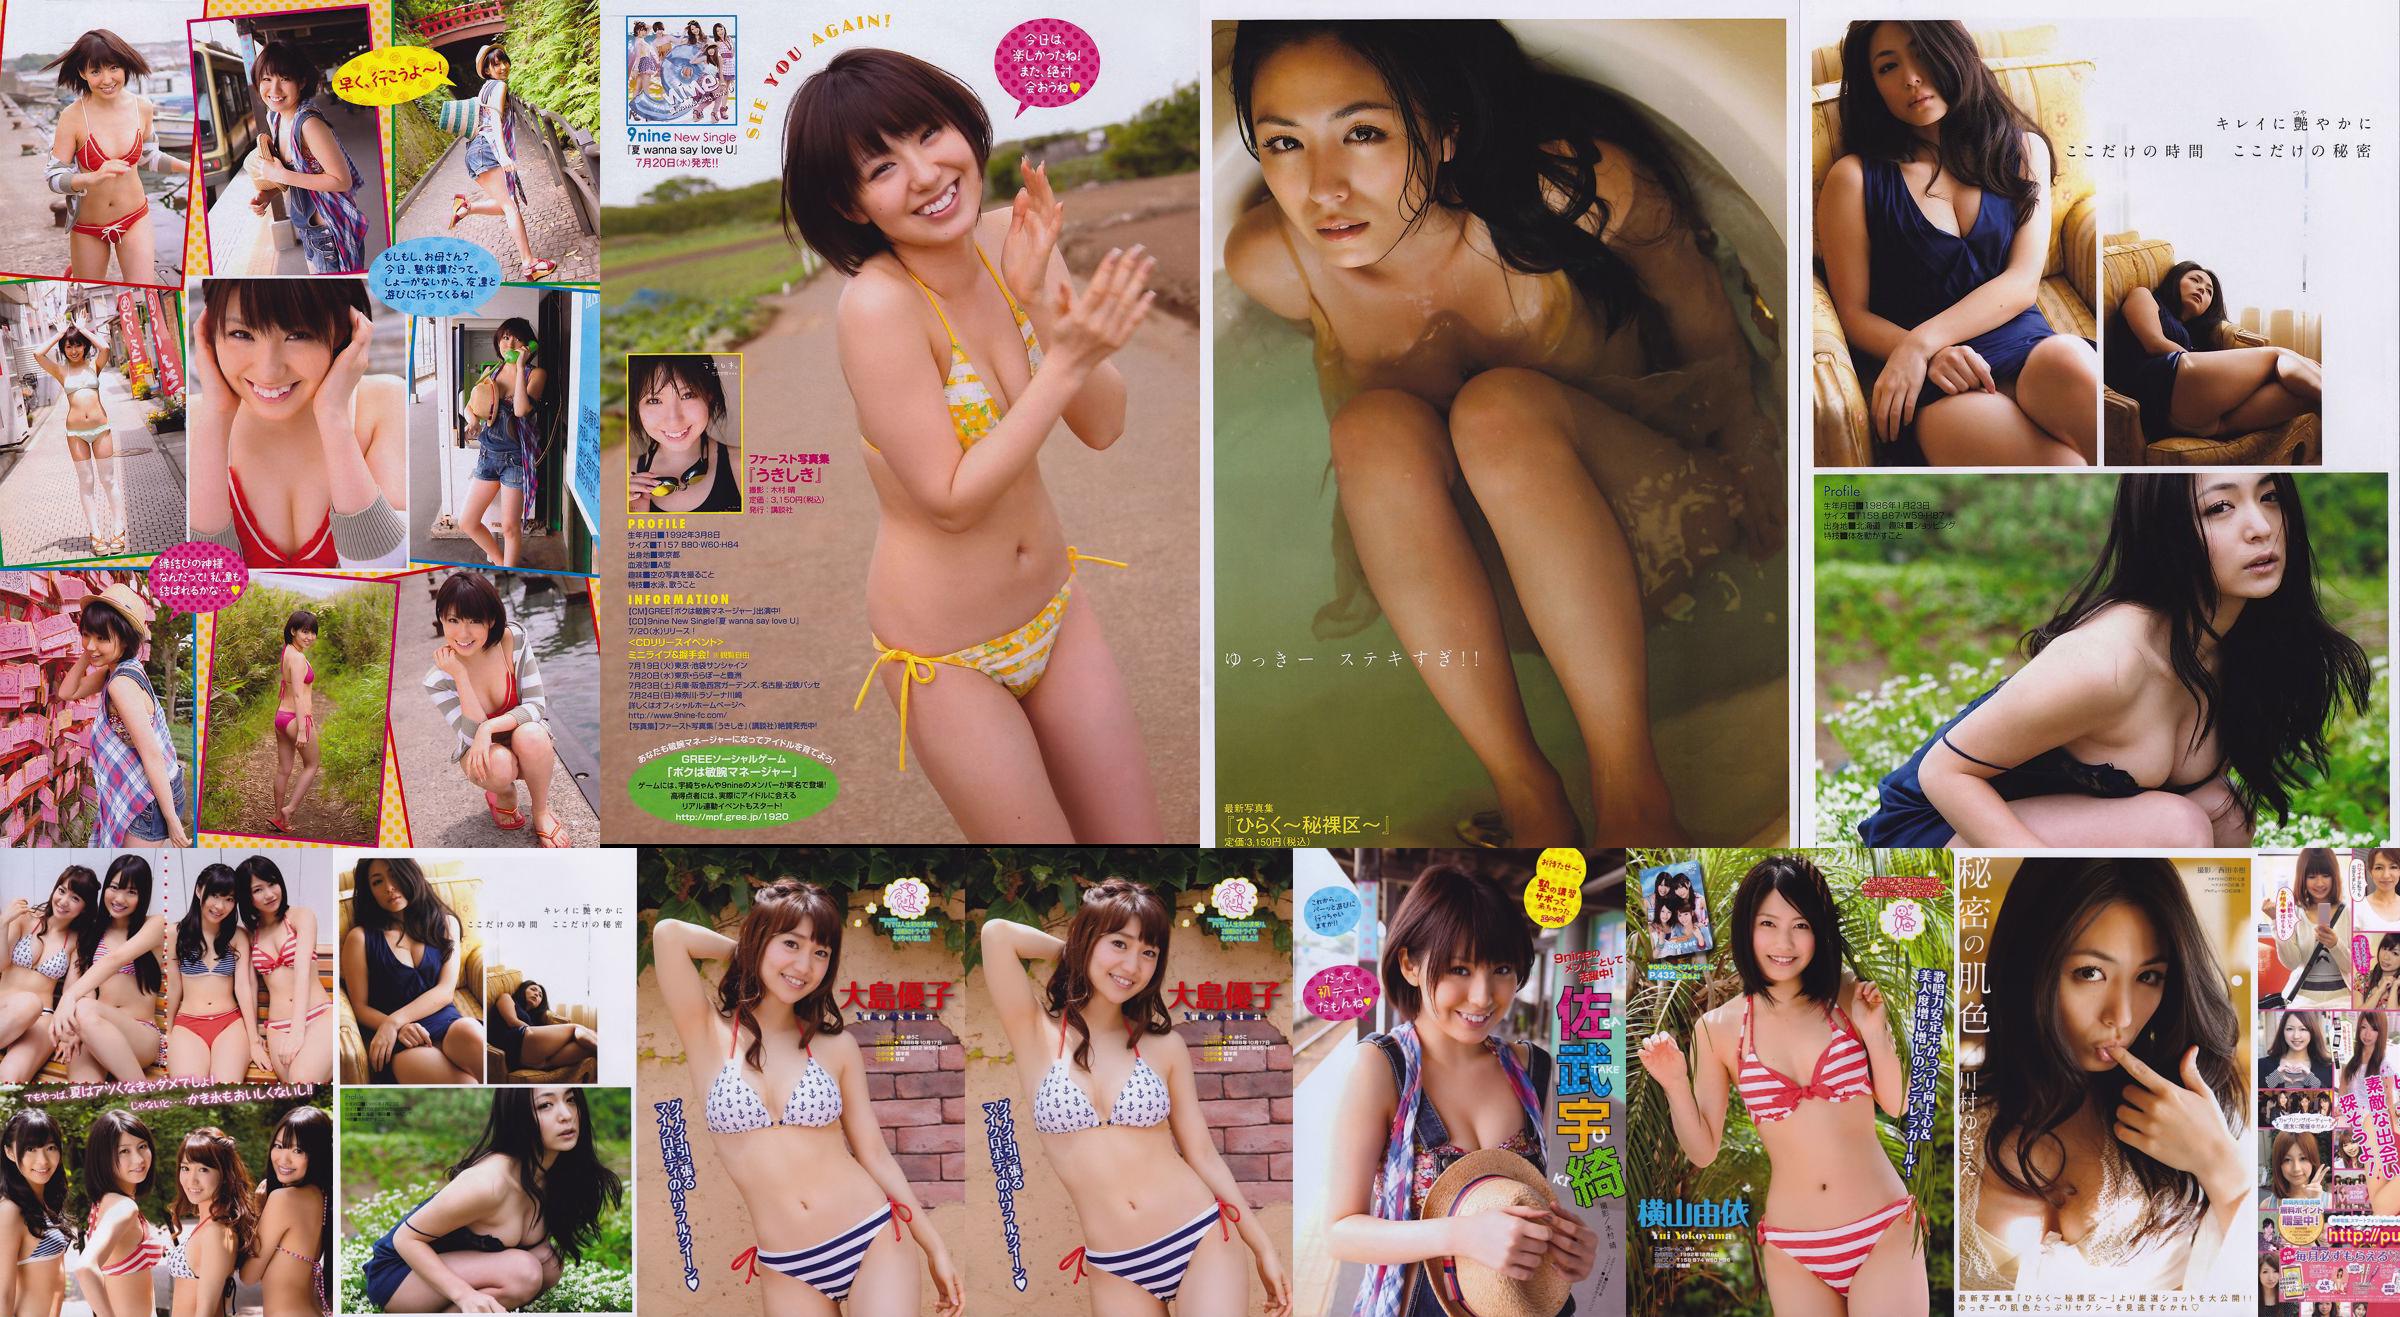 [Young Magazine] Not yet Kawamura ゆきえ Satake Uki 2011 No.32 Photo Magazine No.5bc2bd Page 6